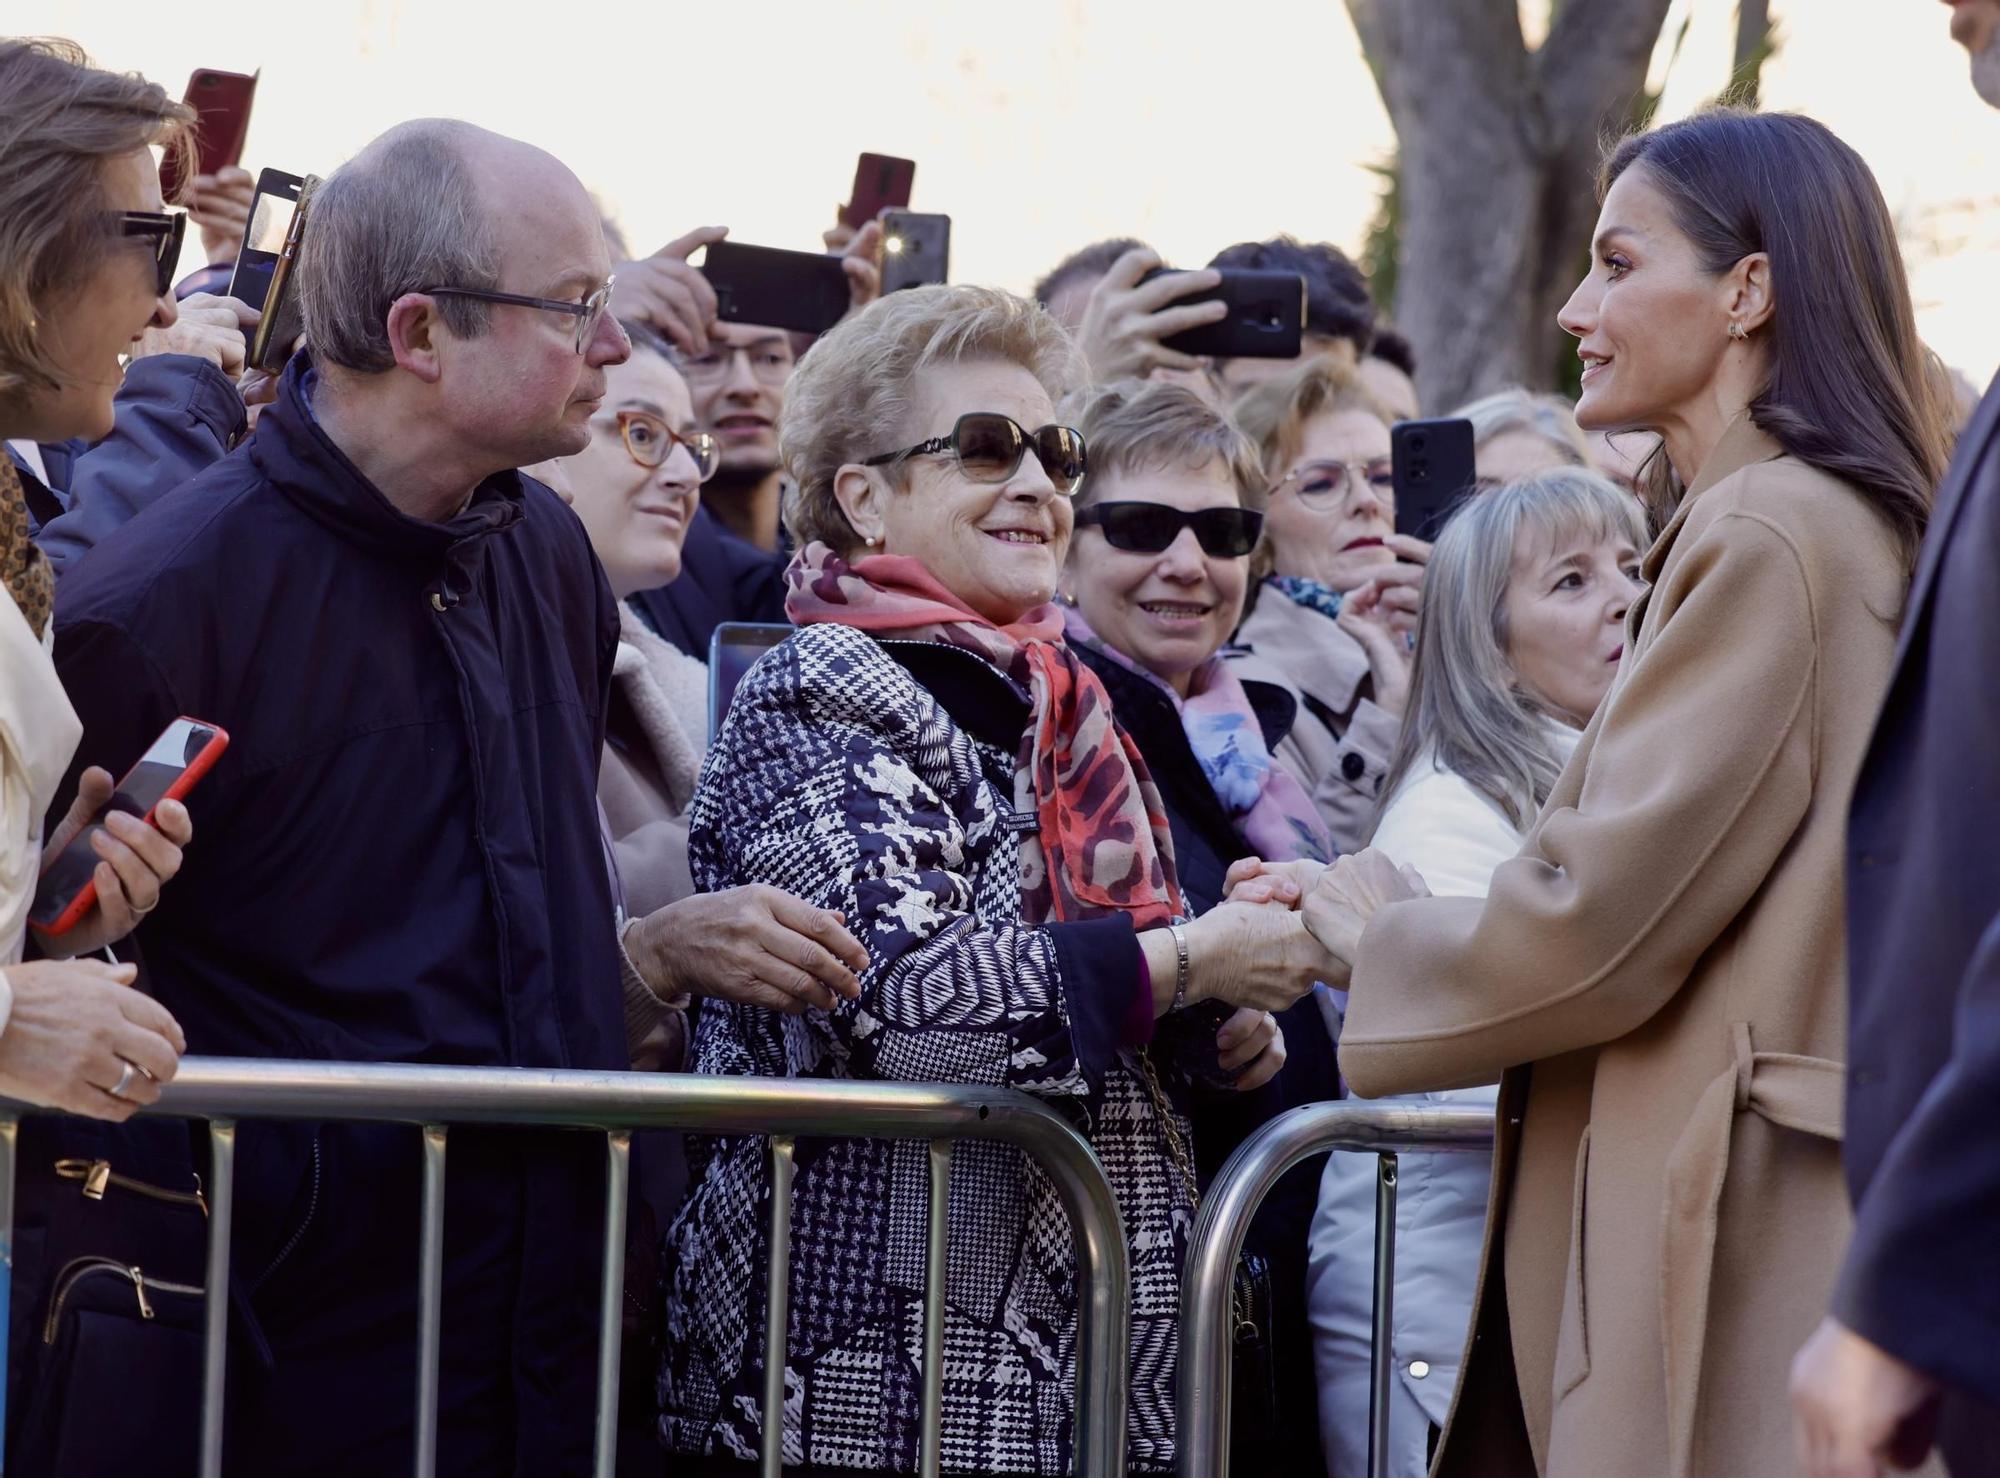 GALERÍA: Así ha sido la visita de la reina Letizia a Salamanca